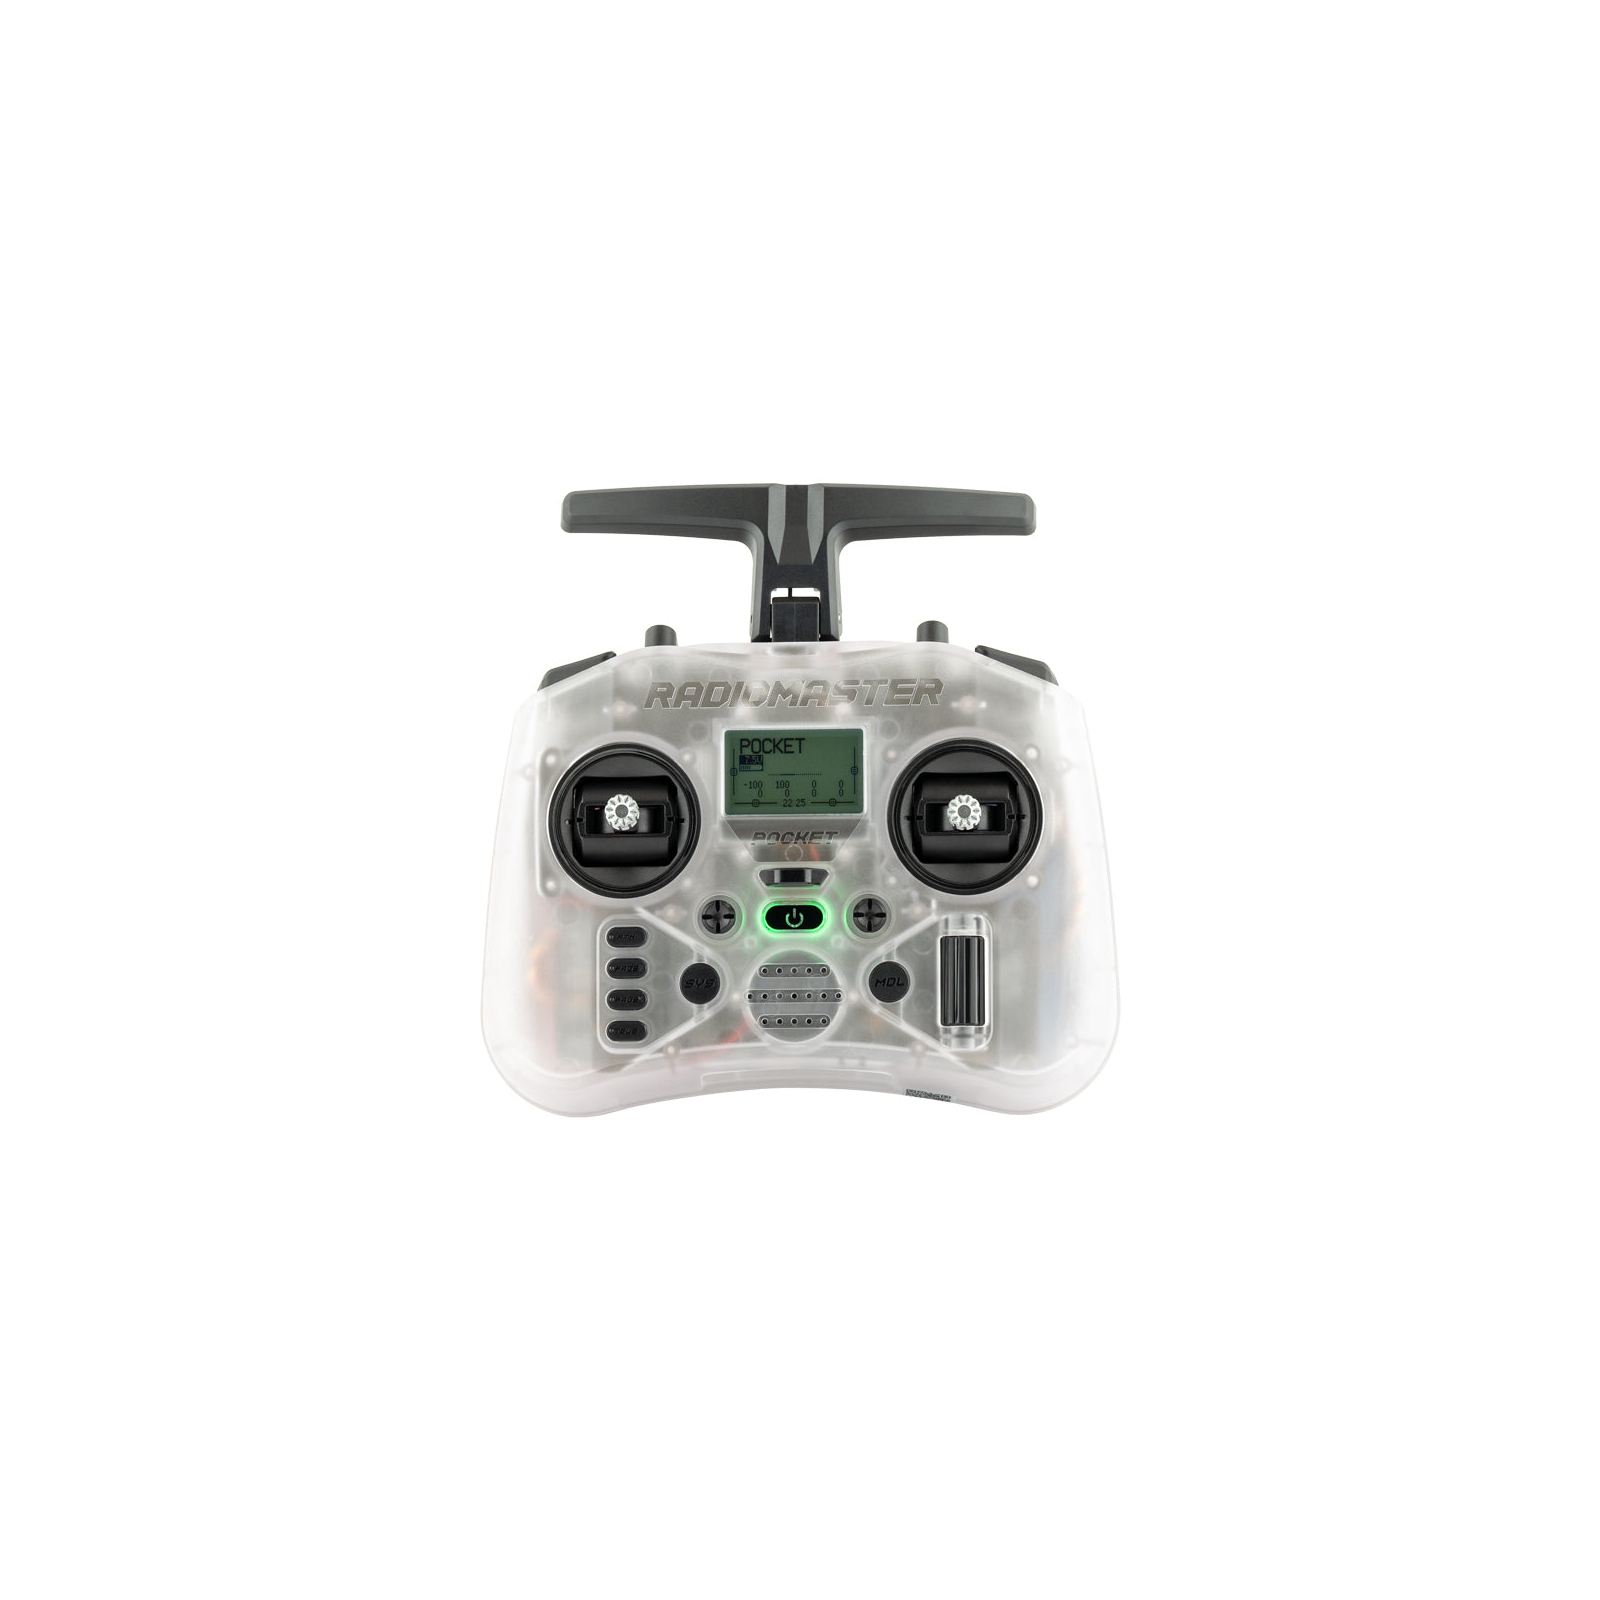 Пульт управления для дрона RadioMaster Pocket ELRS Transparent (HP0157.0053-M2)